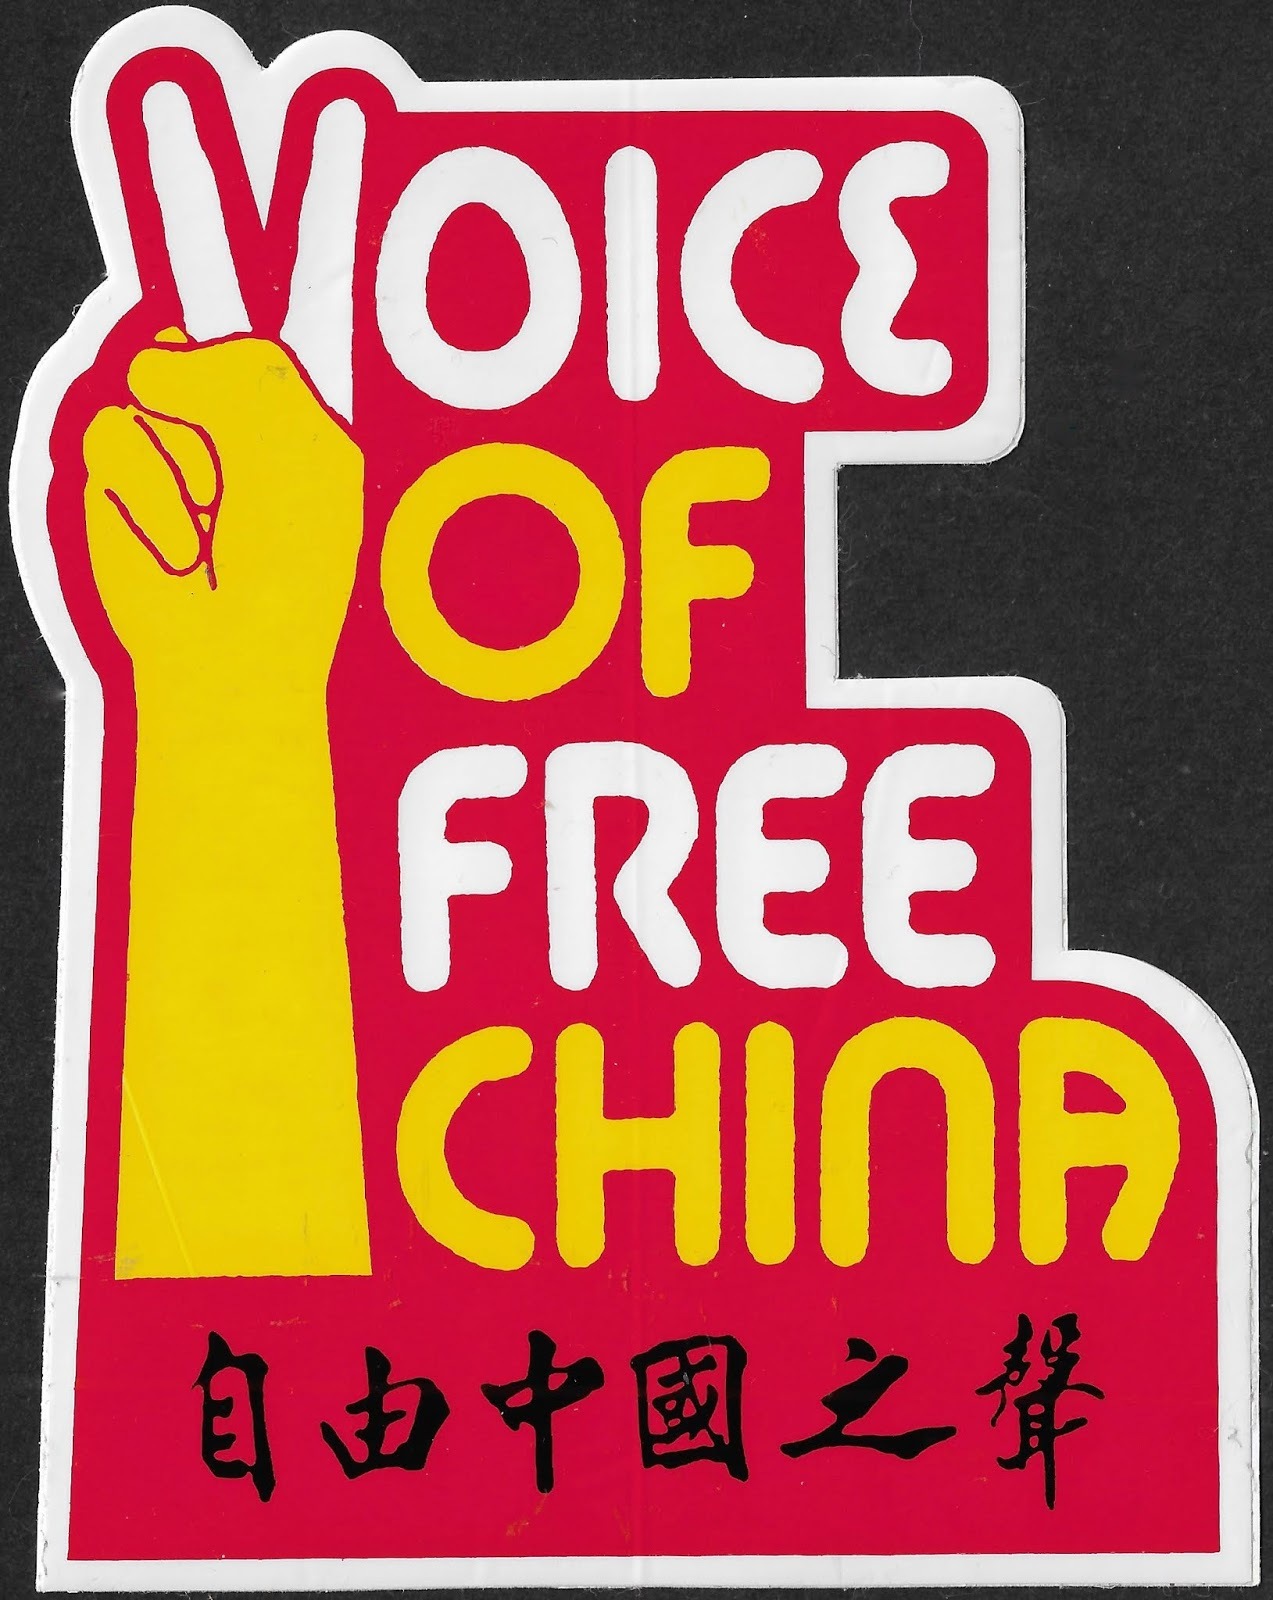 Autocollant de la Voix de la Chine libre, radio de la République de Chine entre 1949 et 1998